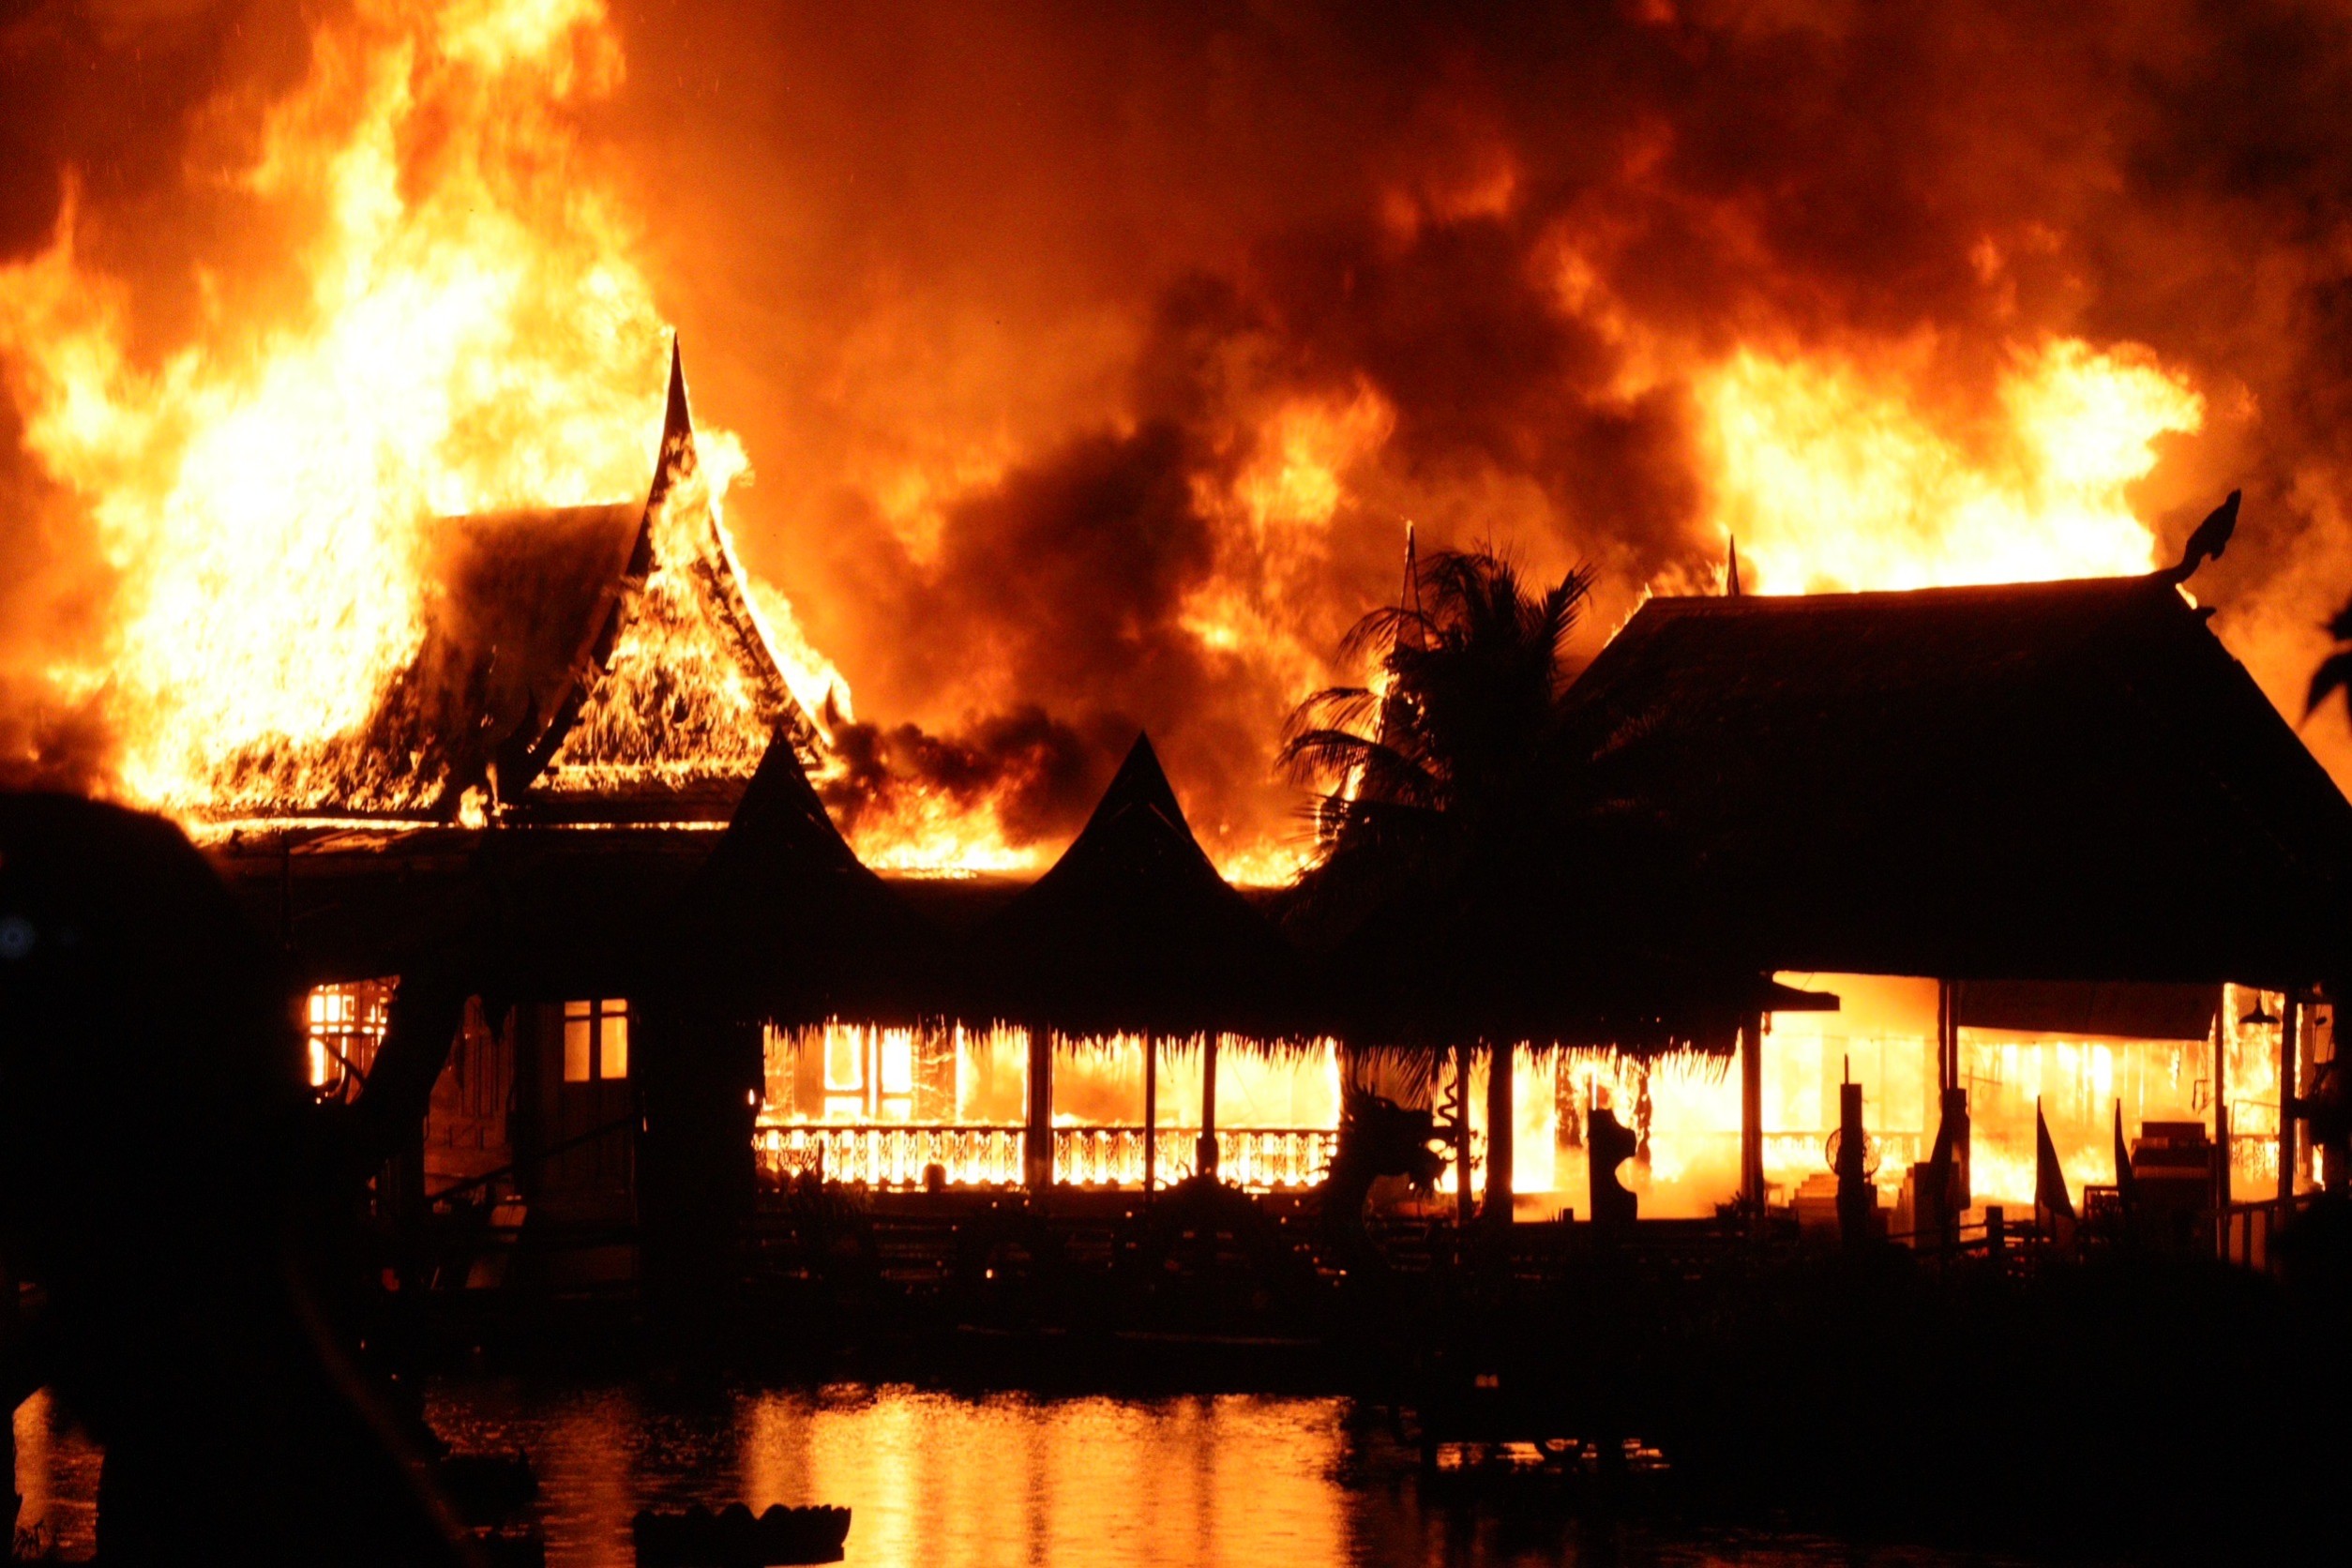 ชลบุรี-ไฟไหม้ตลาดน้ำ 4 ภาคพัทยาเป็นทะเลเพลิง คาดค่าเสียหายเกือบร้อยล้านบาท